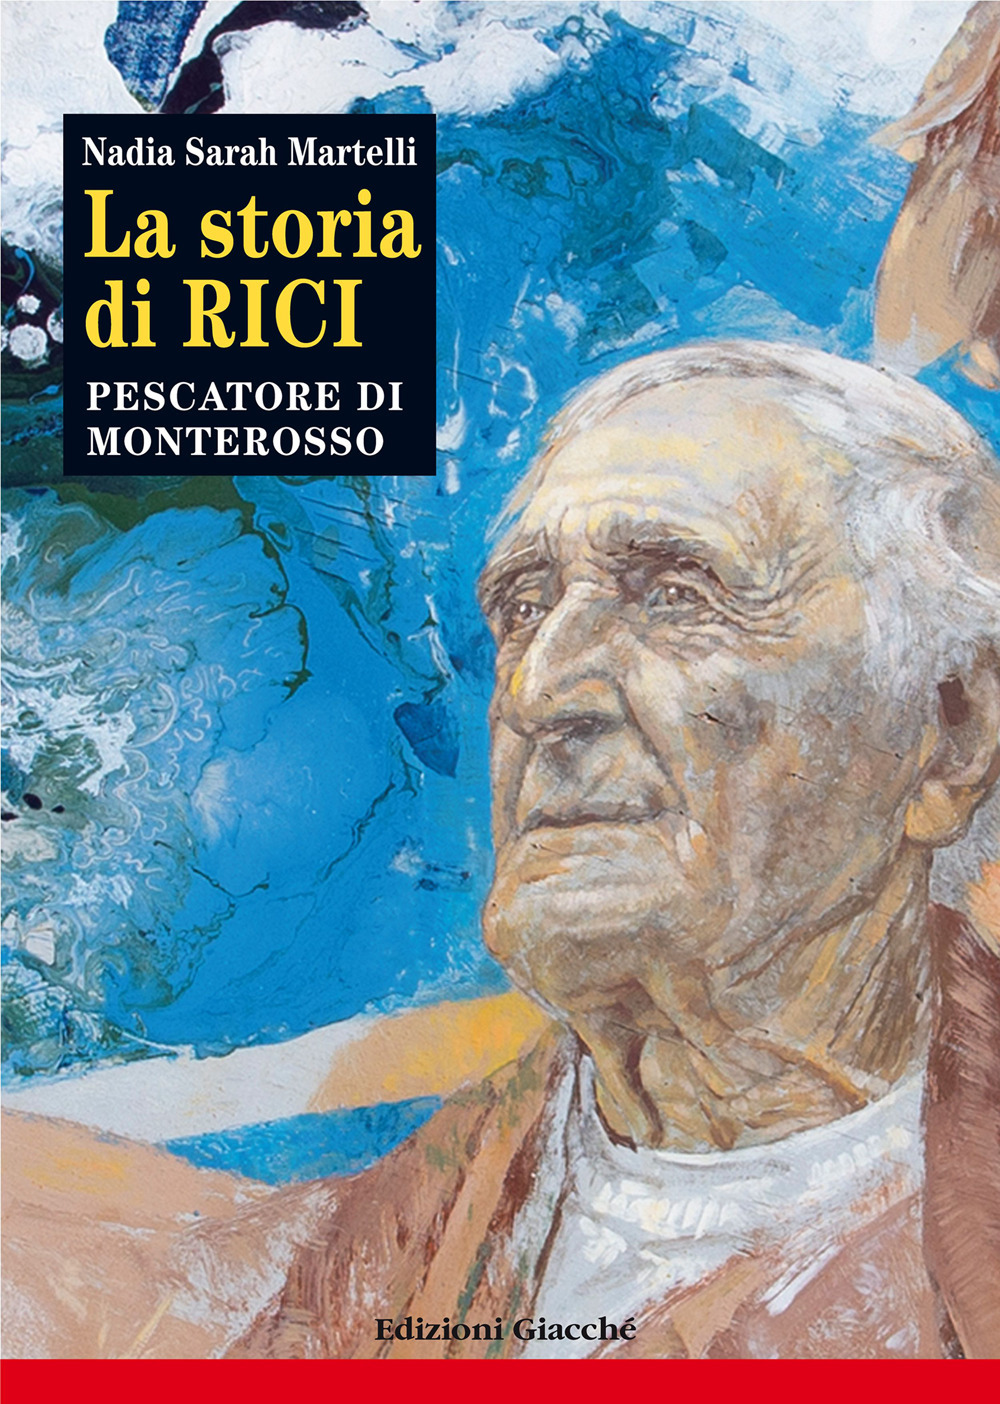 La storia di Rici, pescatore di Monterosso